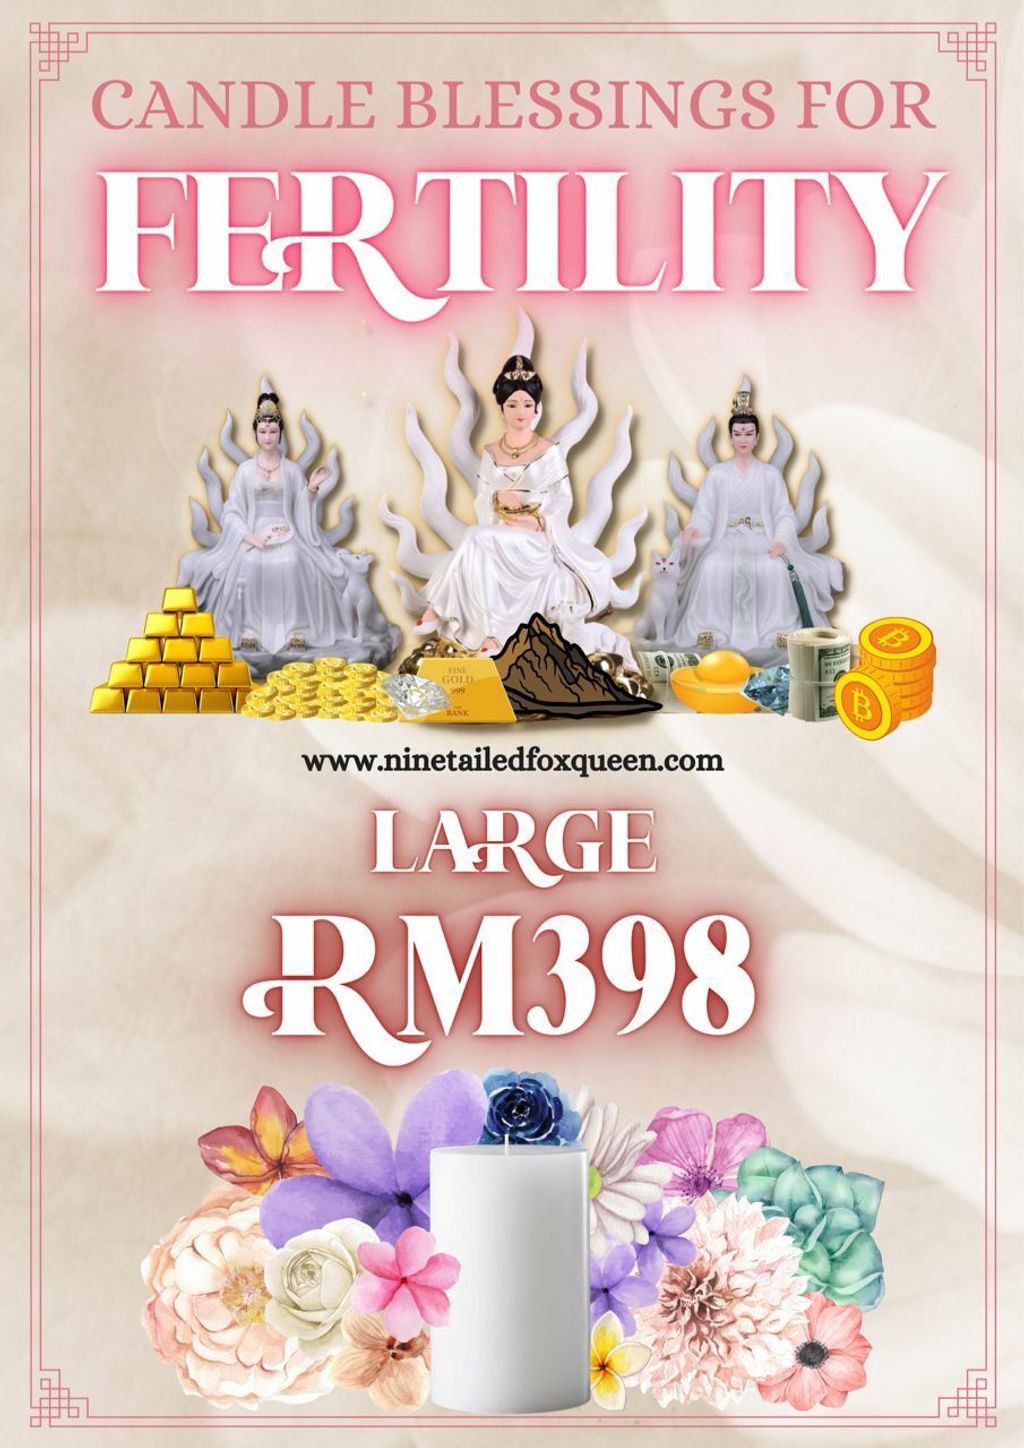 fertility398